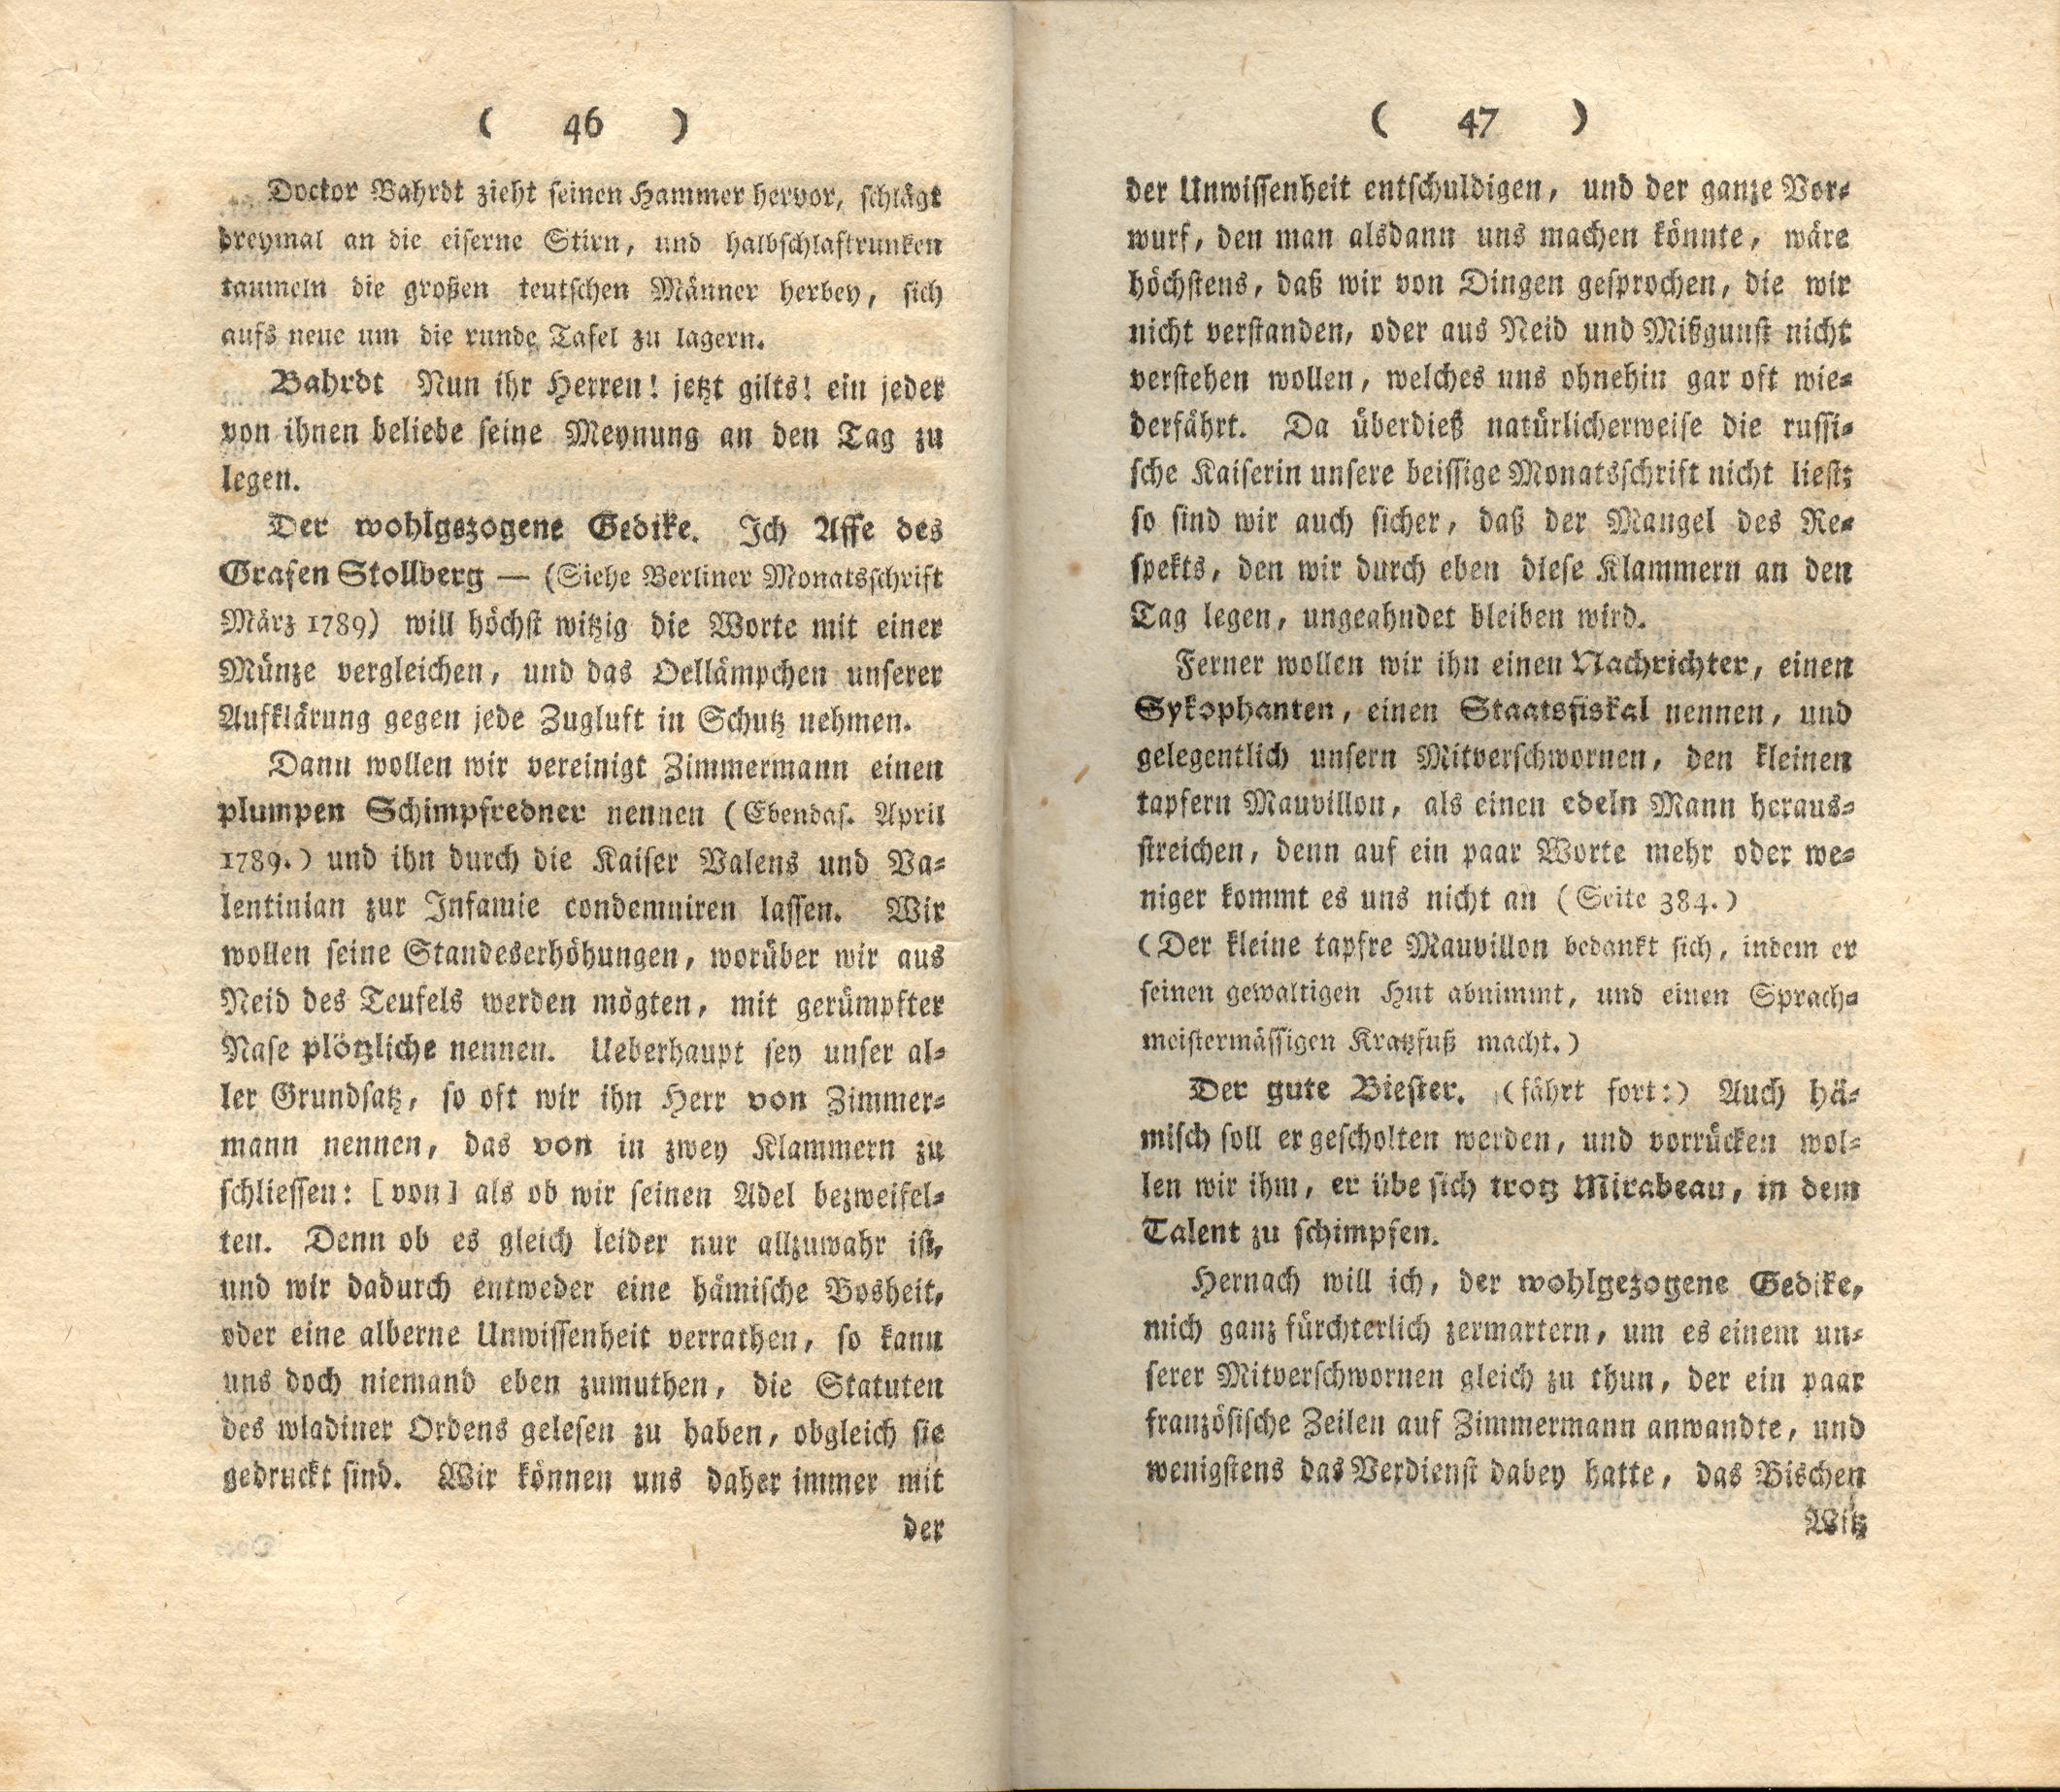 Doctor Bahrdt mit der eisernen Stirn (1790) | 25. (46-47) Haupttext